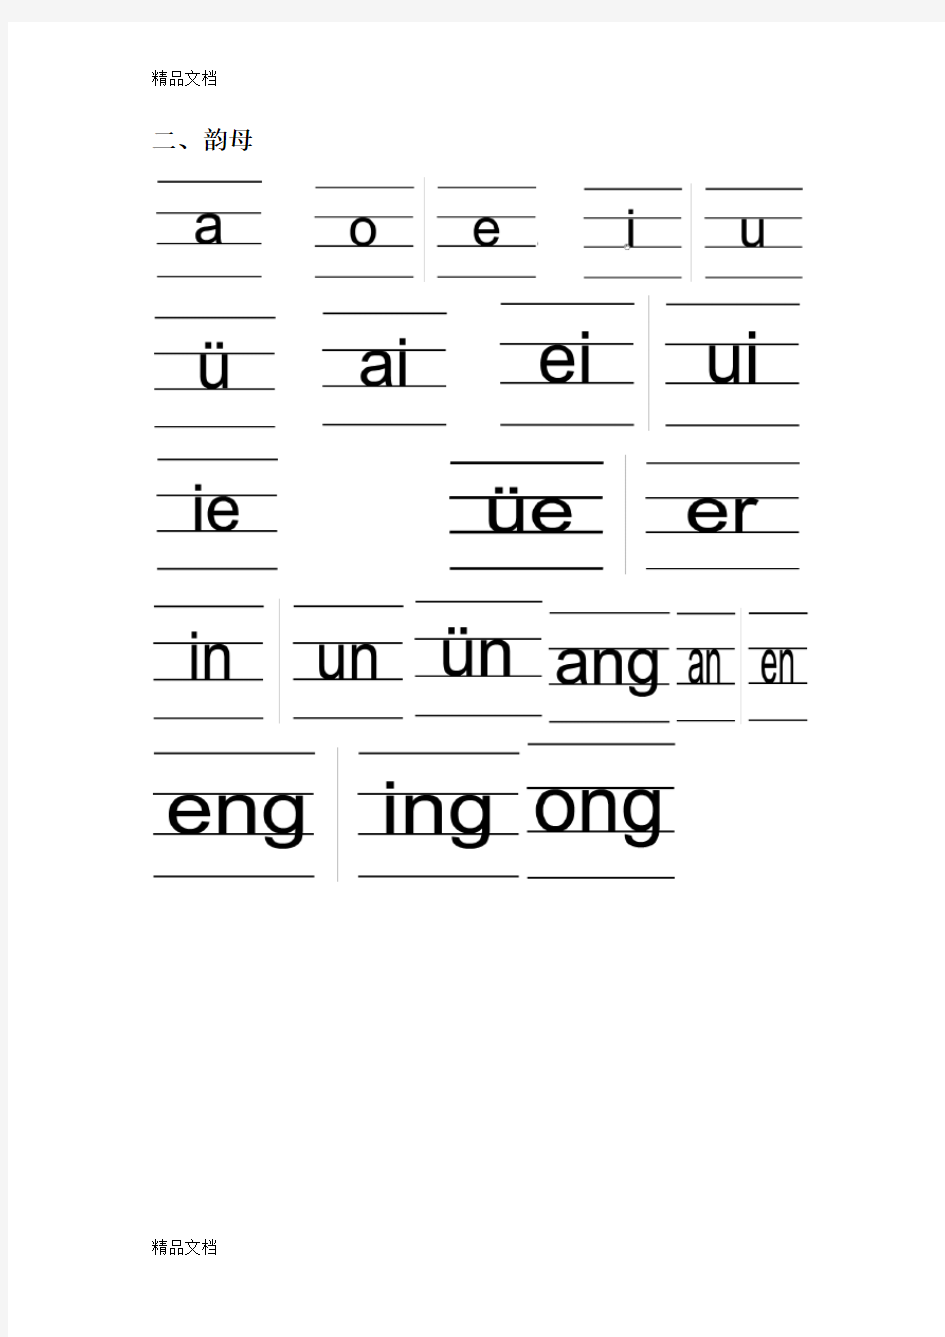 汉语拼音的书写格式(四线三格)47413教学提纲